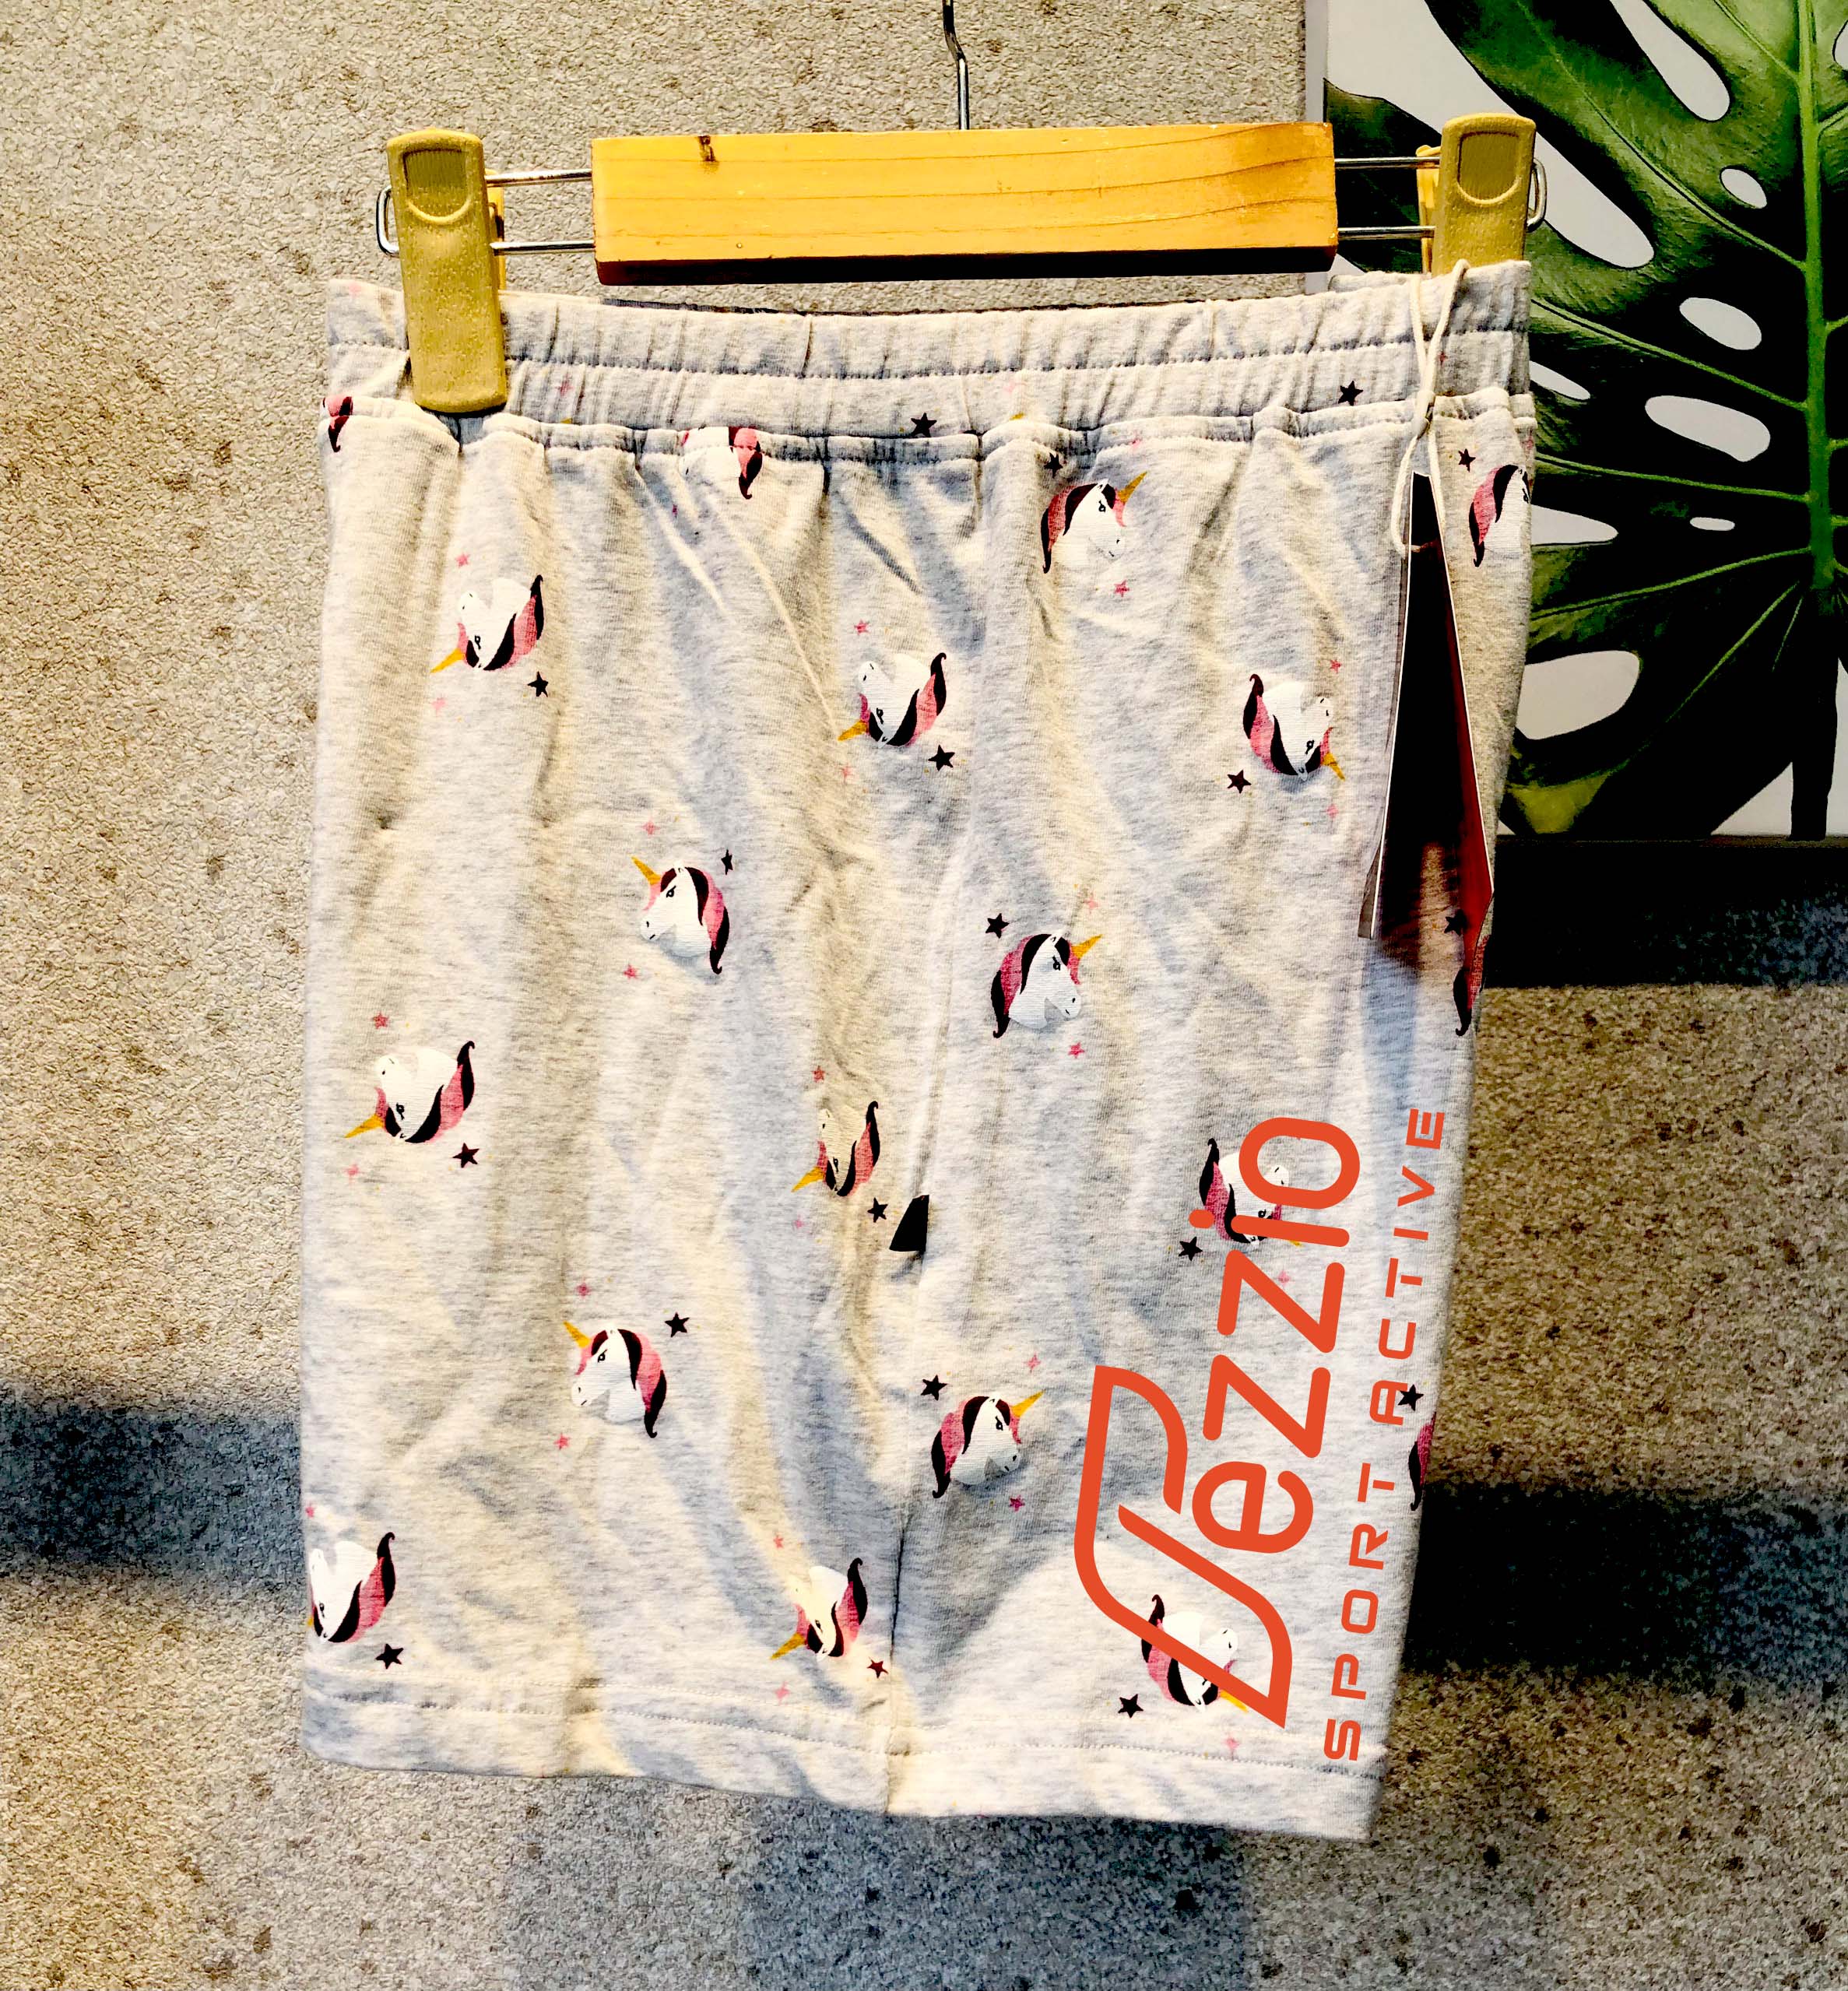 Combo 4 quần đùi mặc nhà chất liệu thun cotton cao cấp phom dáng năng động trẻ trung chính hãng Fezzio